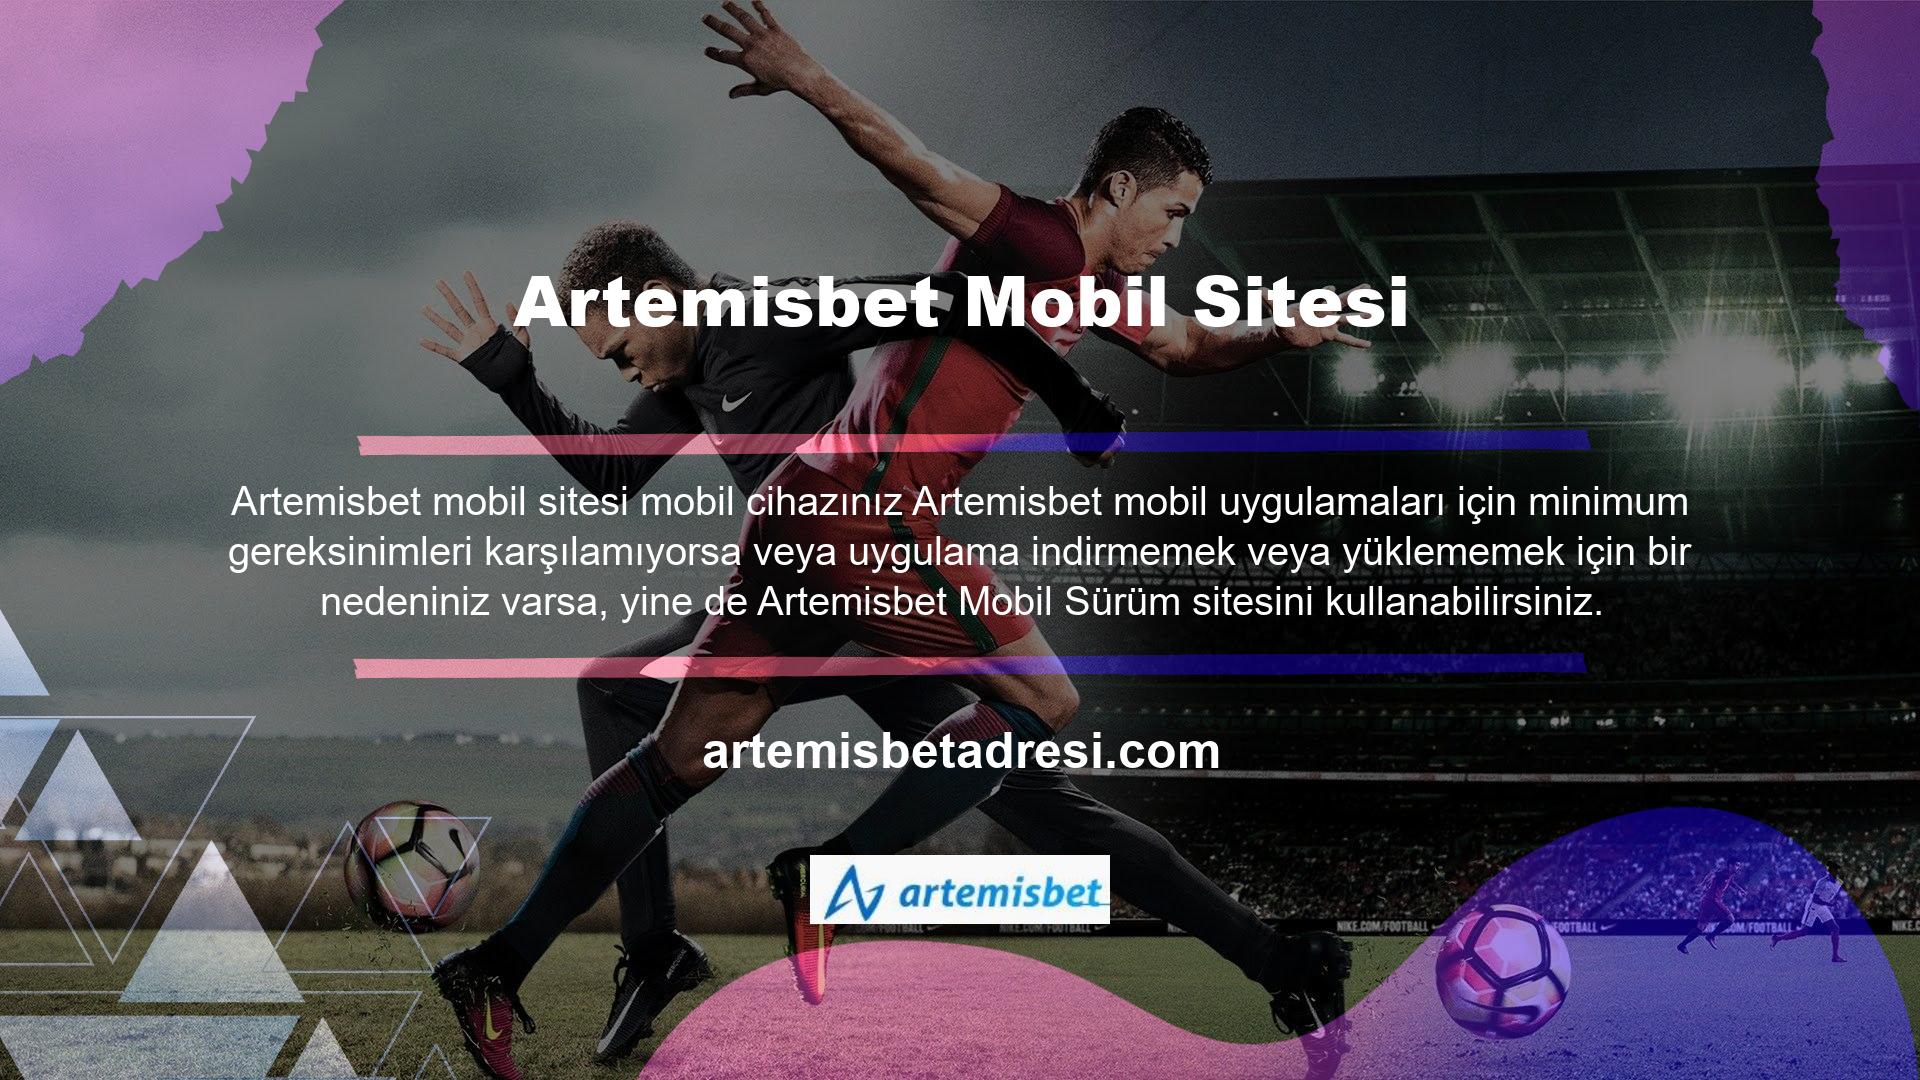 Artemisbet web sitesinin mobil versiyonuna, cihazınıza herhangi bir ek yazılım indirmeye veya yüklemeye gerek kalmadan doğrudan mobil tarayıcınızdan erişilebilir